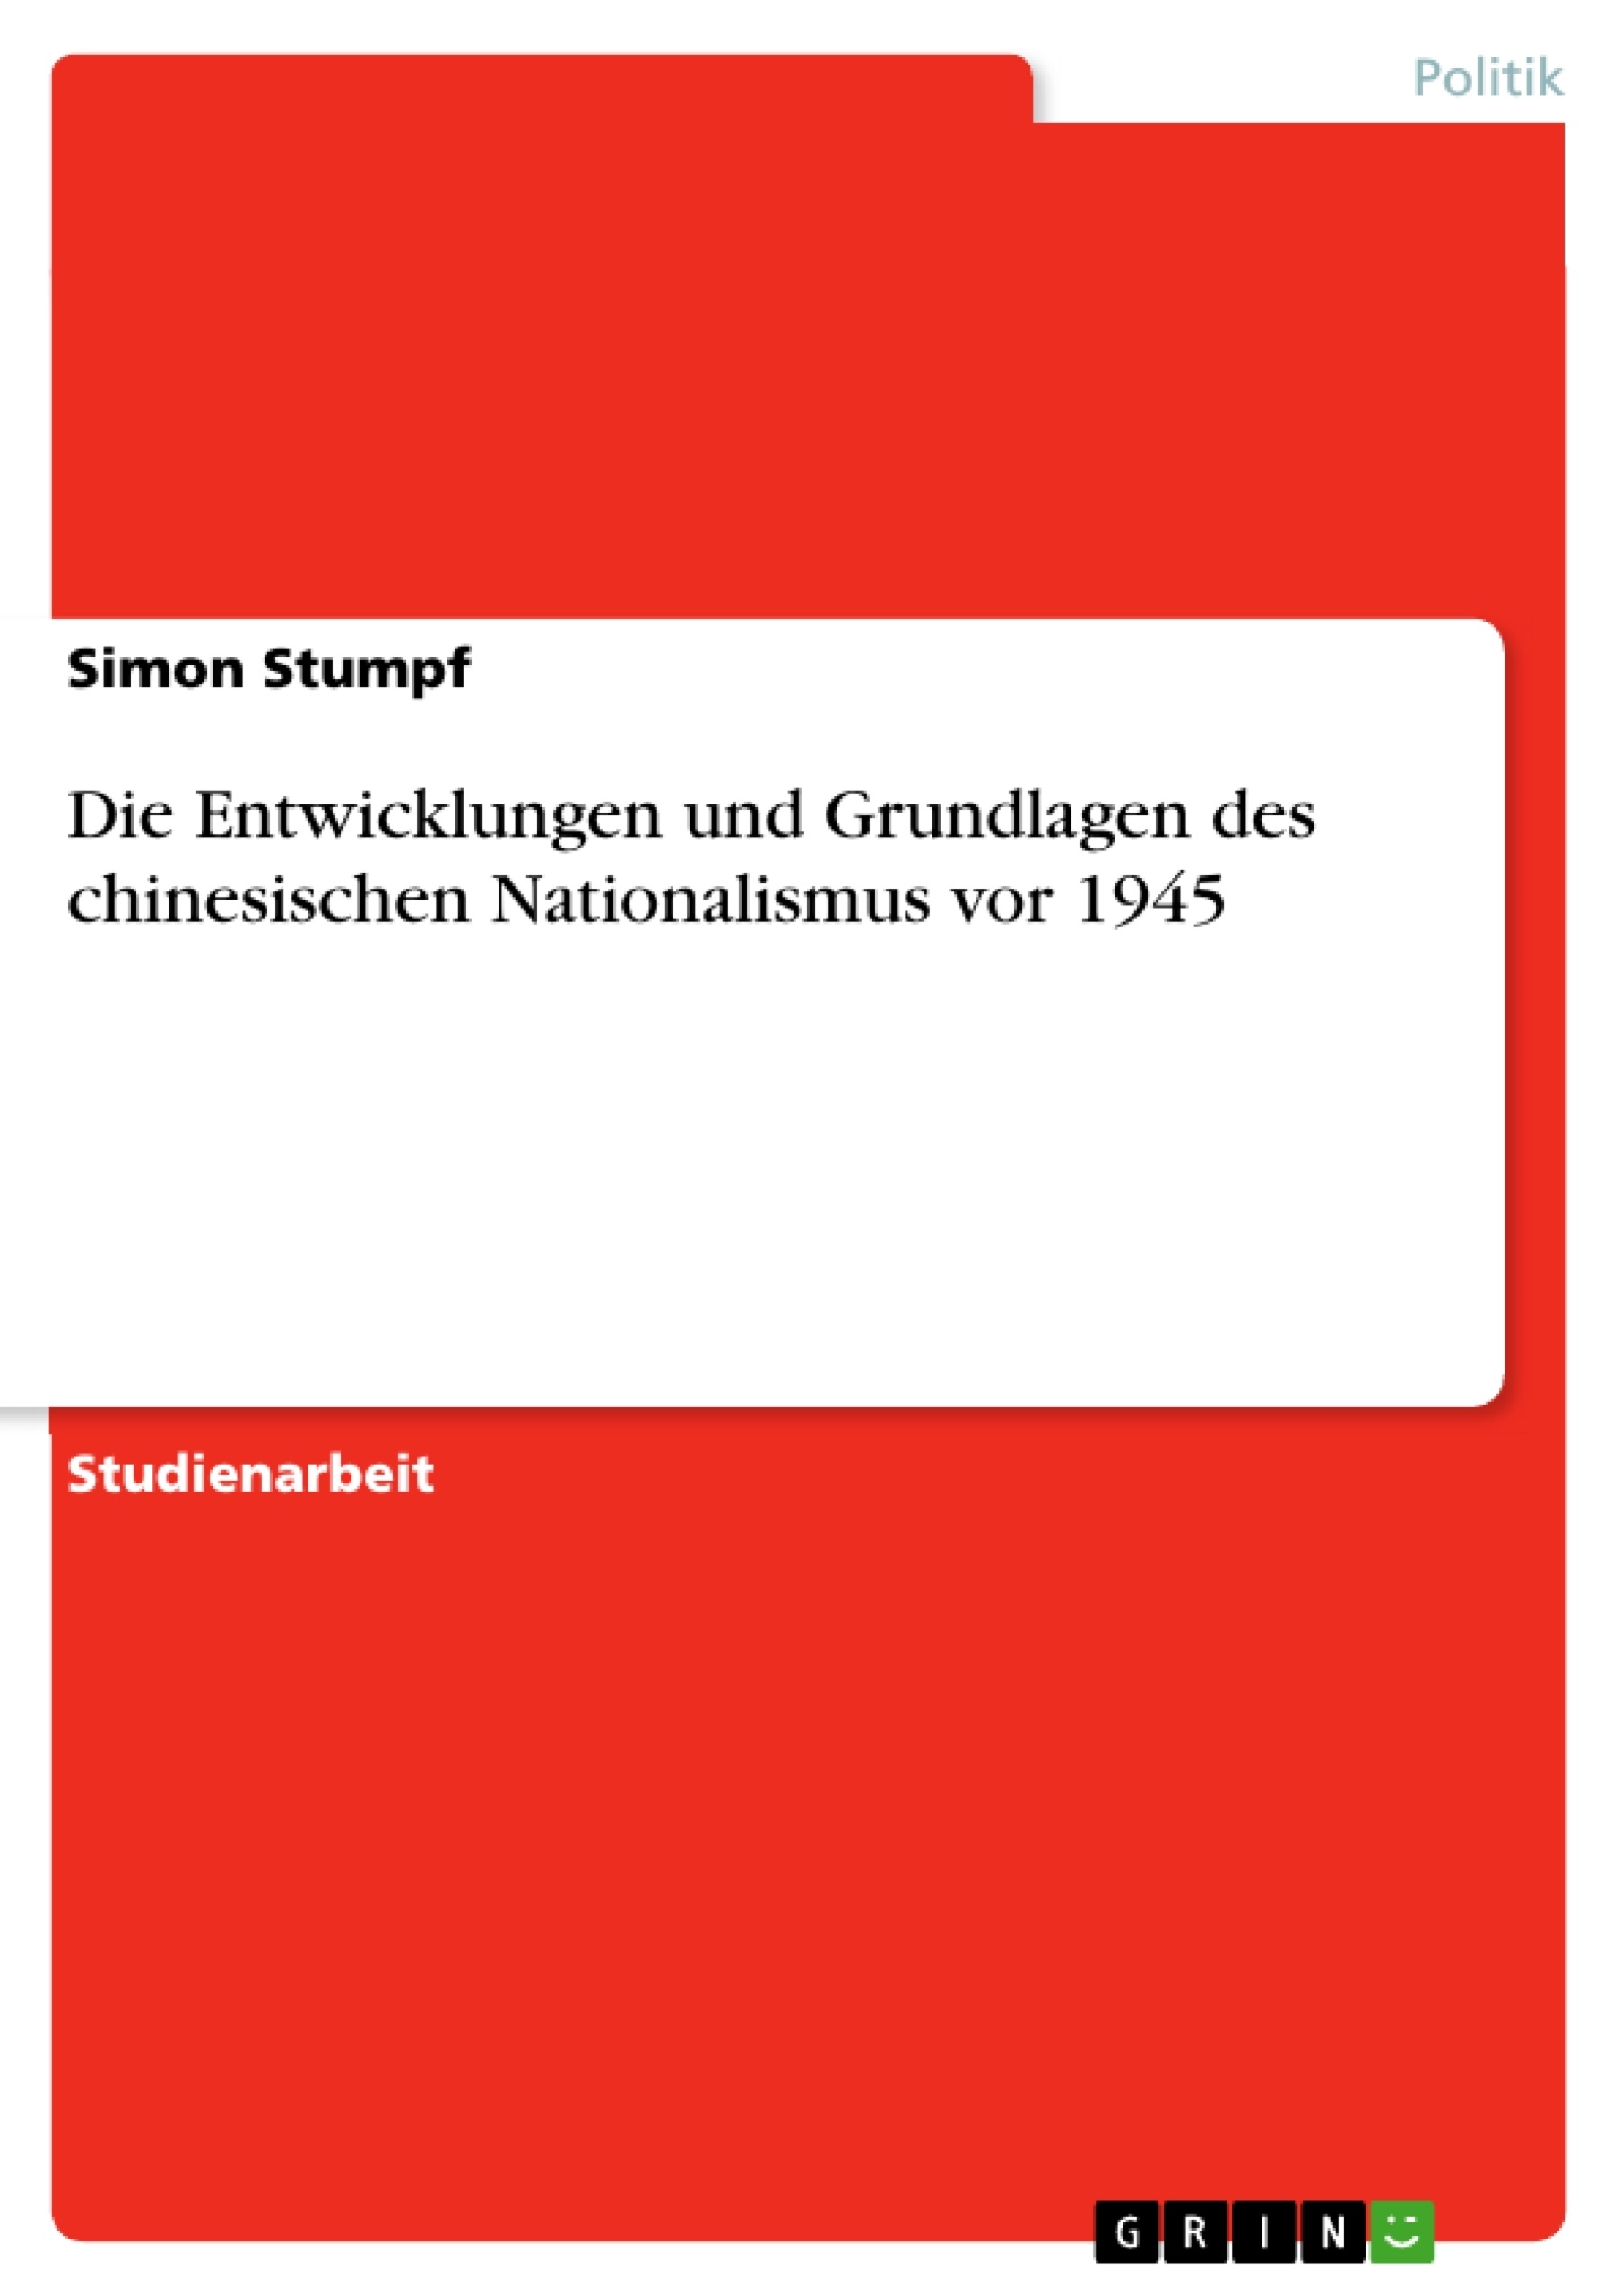 Título: Die Entwicklungen und Grundlagen des chinesischen Nationalismus vor 1945